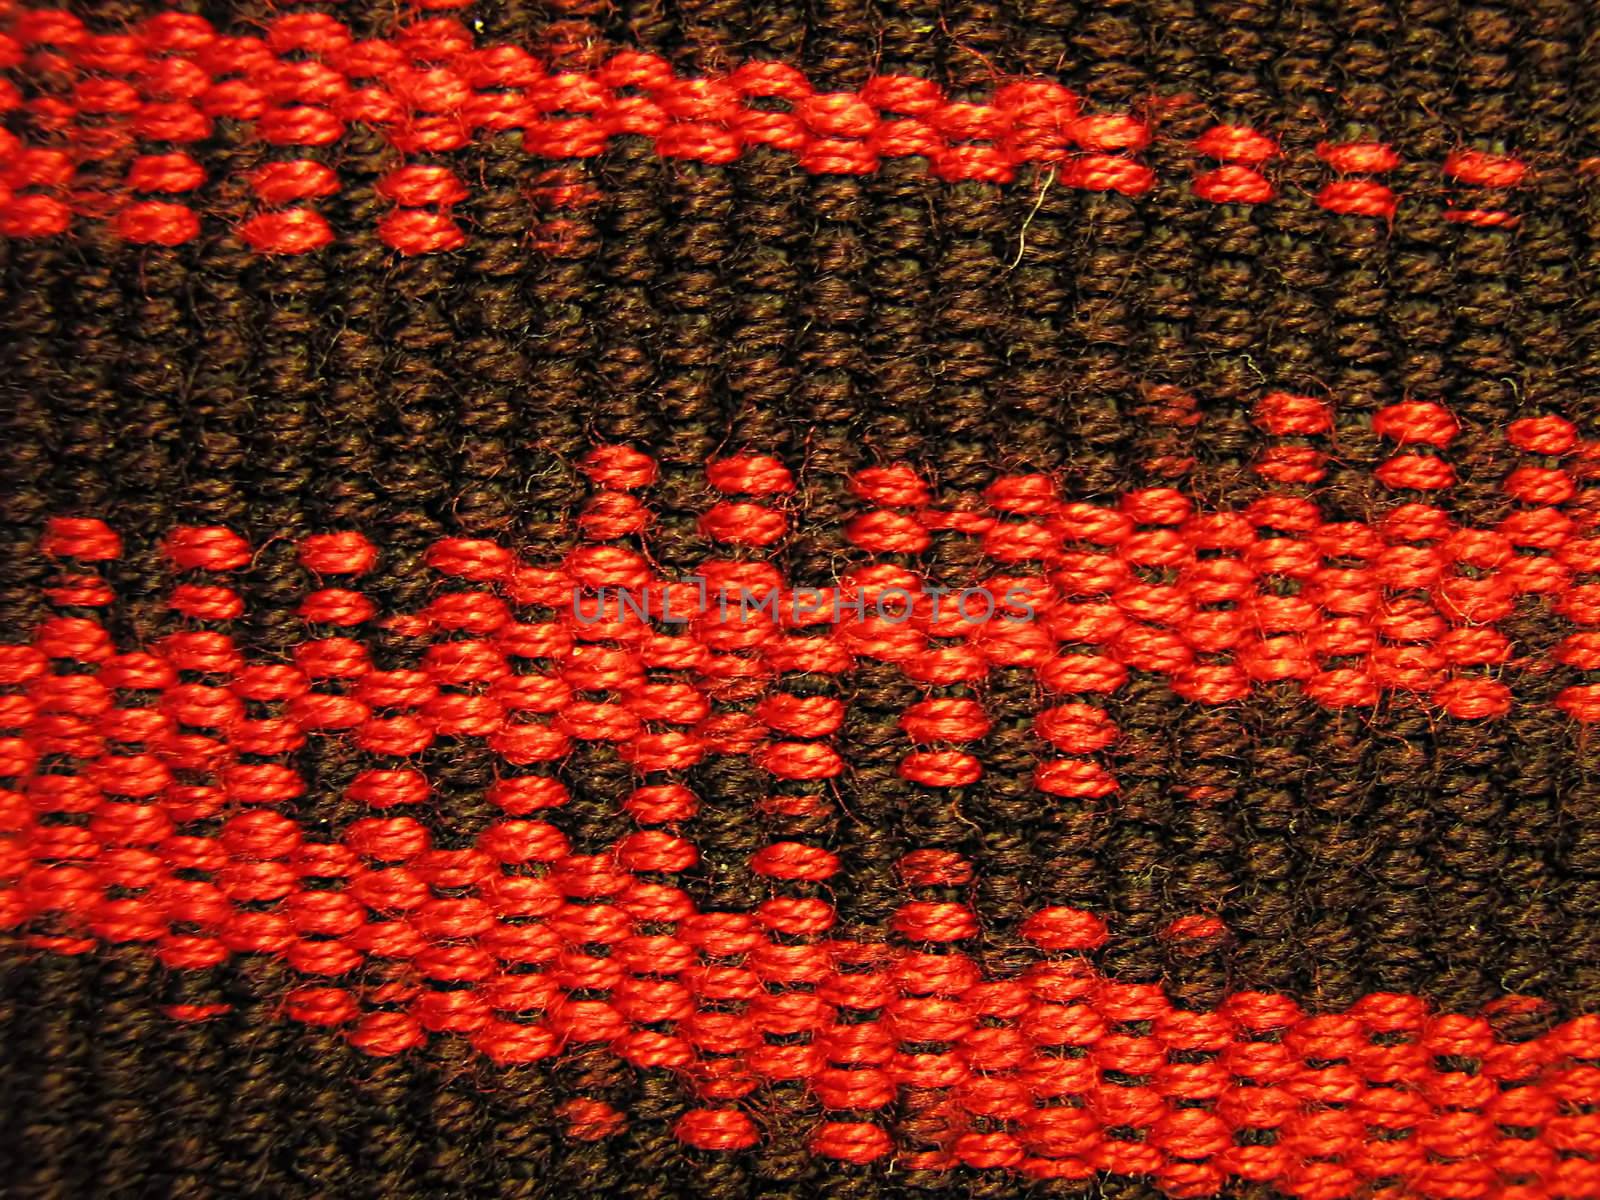 Red & Black Fabric Macro by llyr8